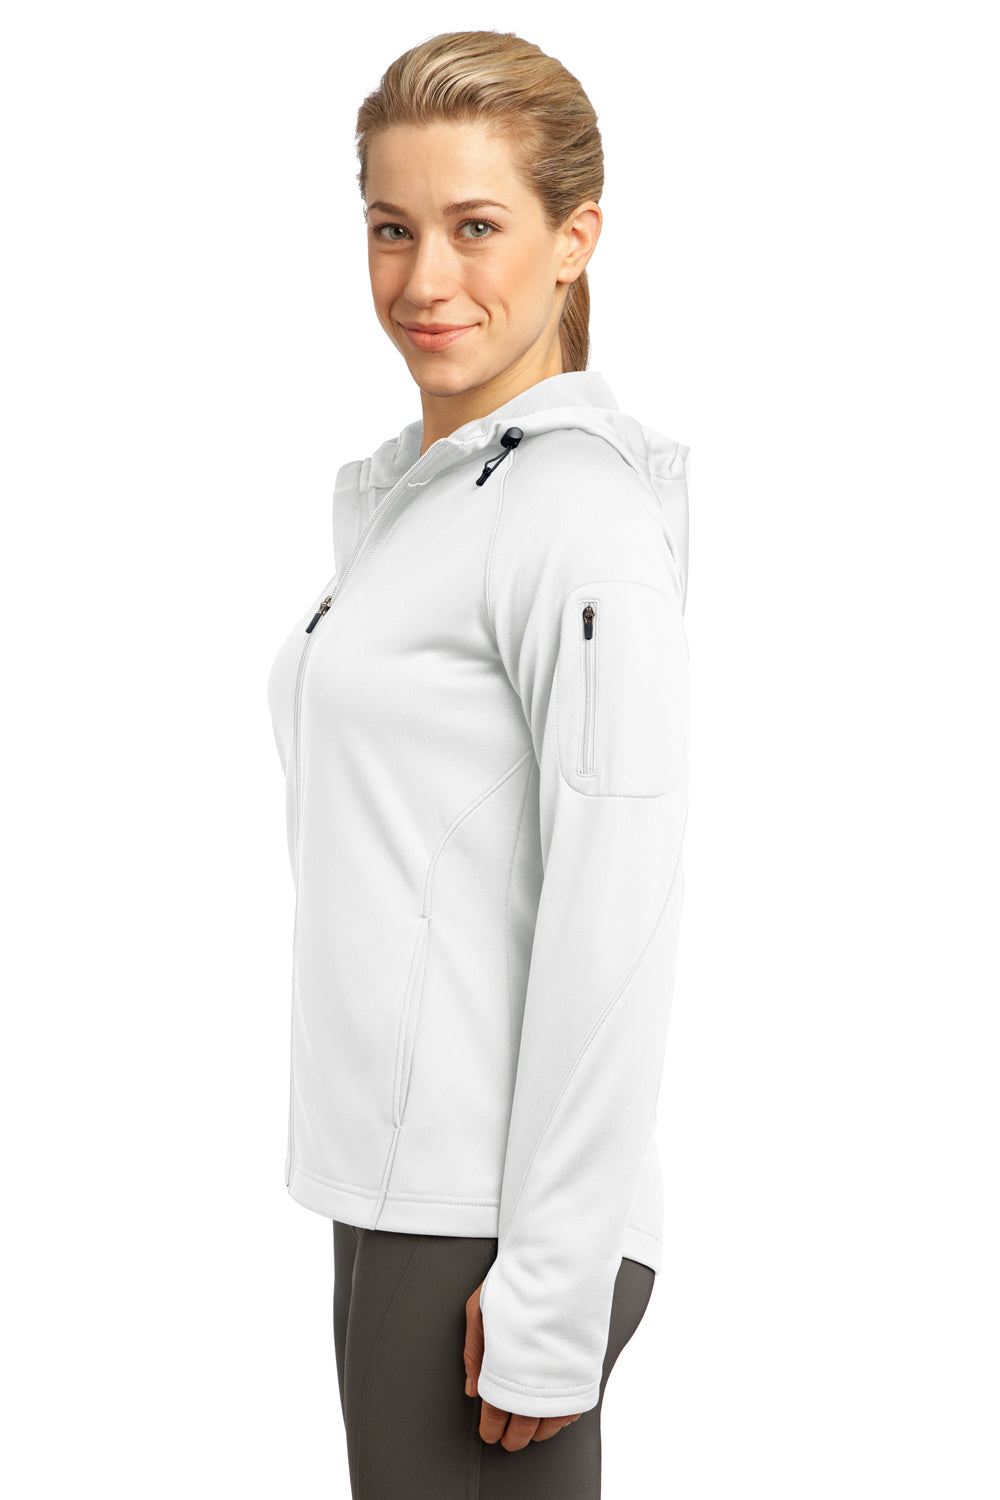 Sport-Tek L248 Womens Tech Moisture Wicking Fleece Full Zip Hooded Sweatshirt Hoodie White Side